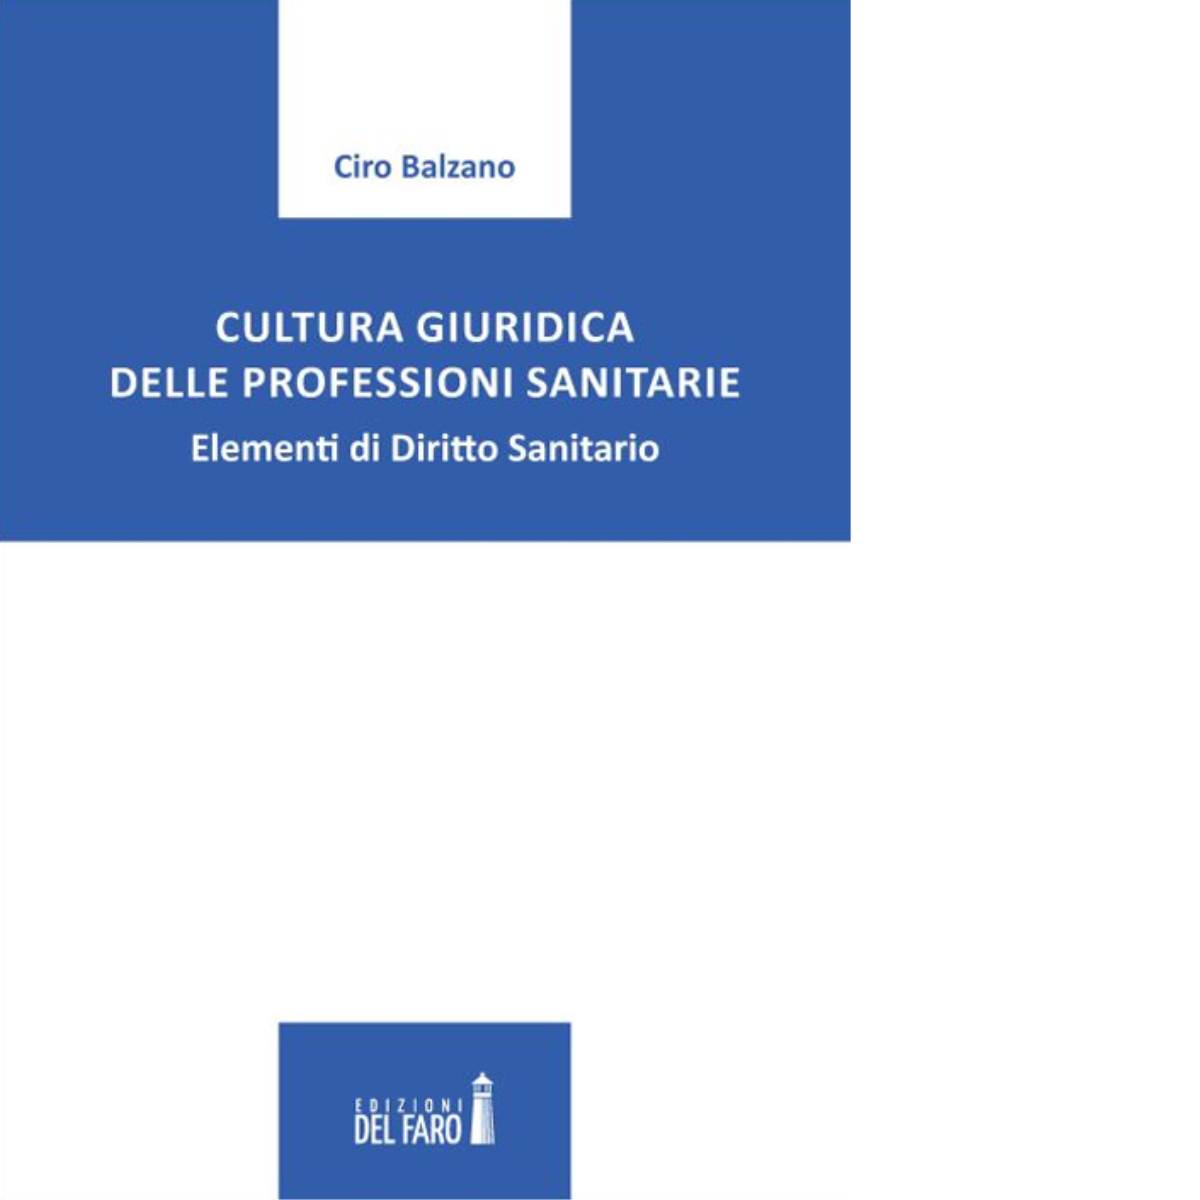 Cultura giuridica delle professioni sanitarie di Ciro Balzano - Del Faro, 2022 libro usato